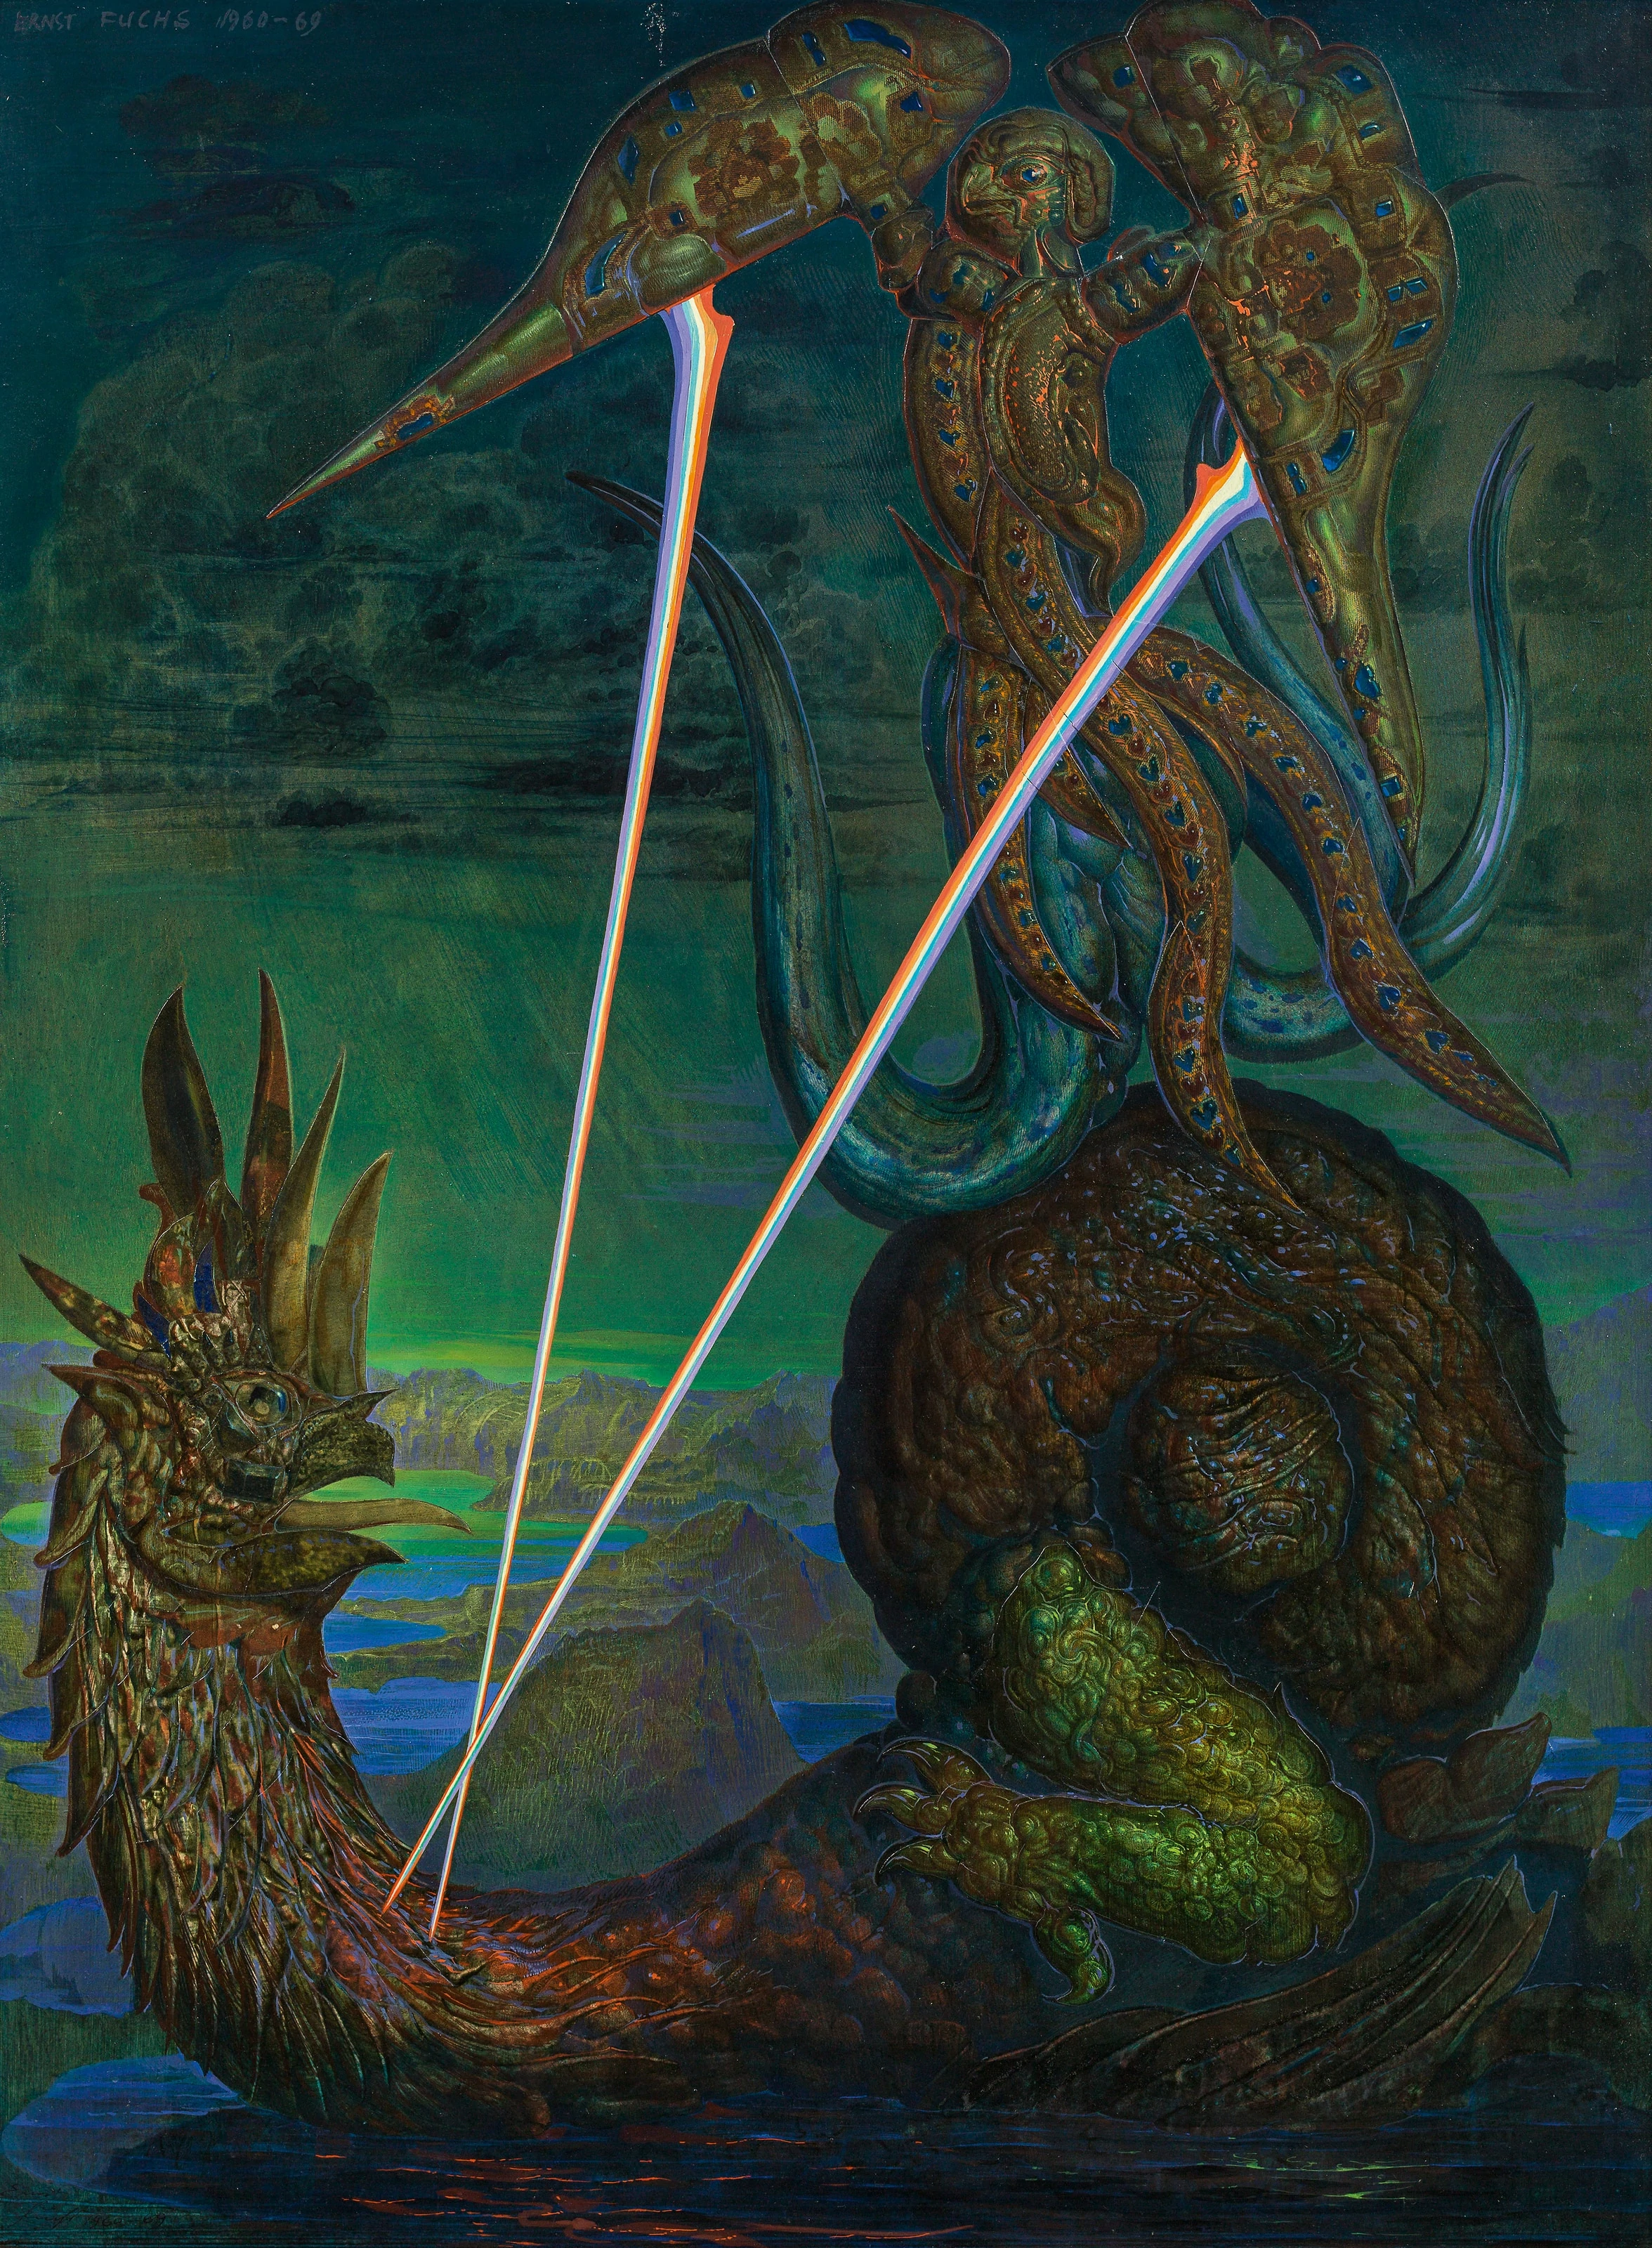 Griffin and Dragon, Ernst Fuchs